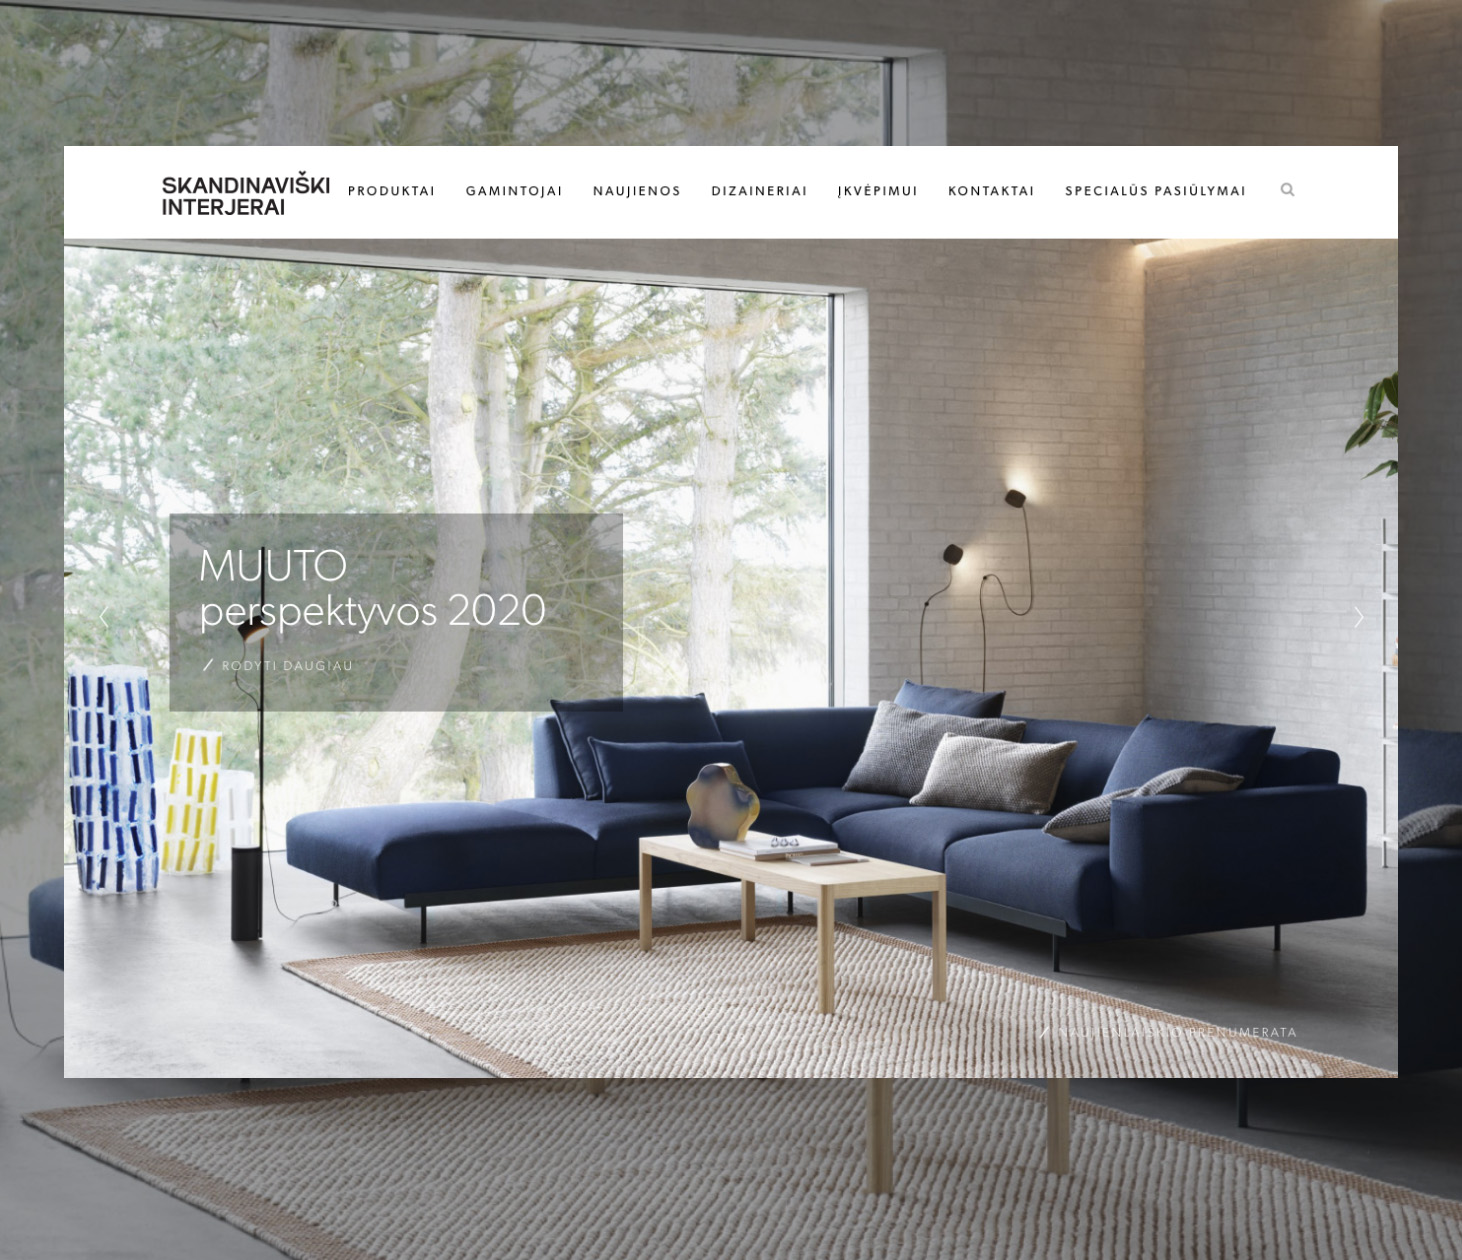 Representative website of ‘Scandinavian interiors’